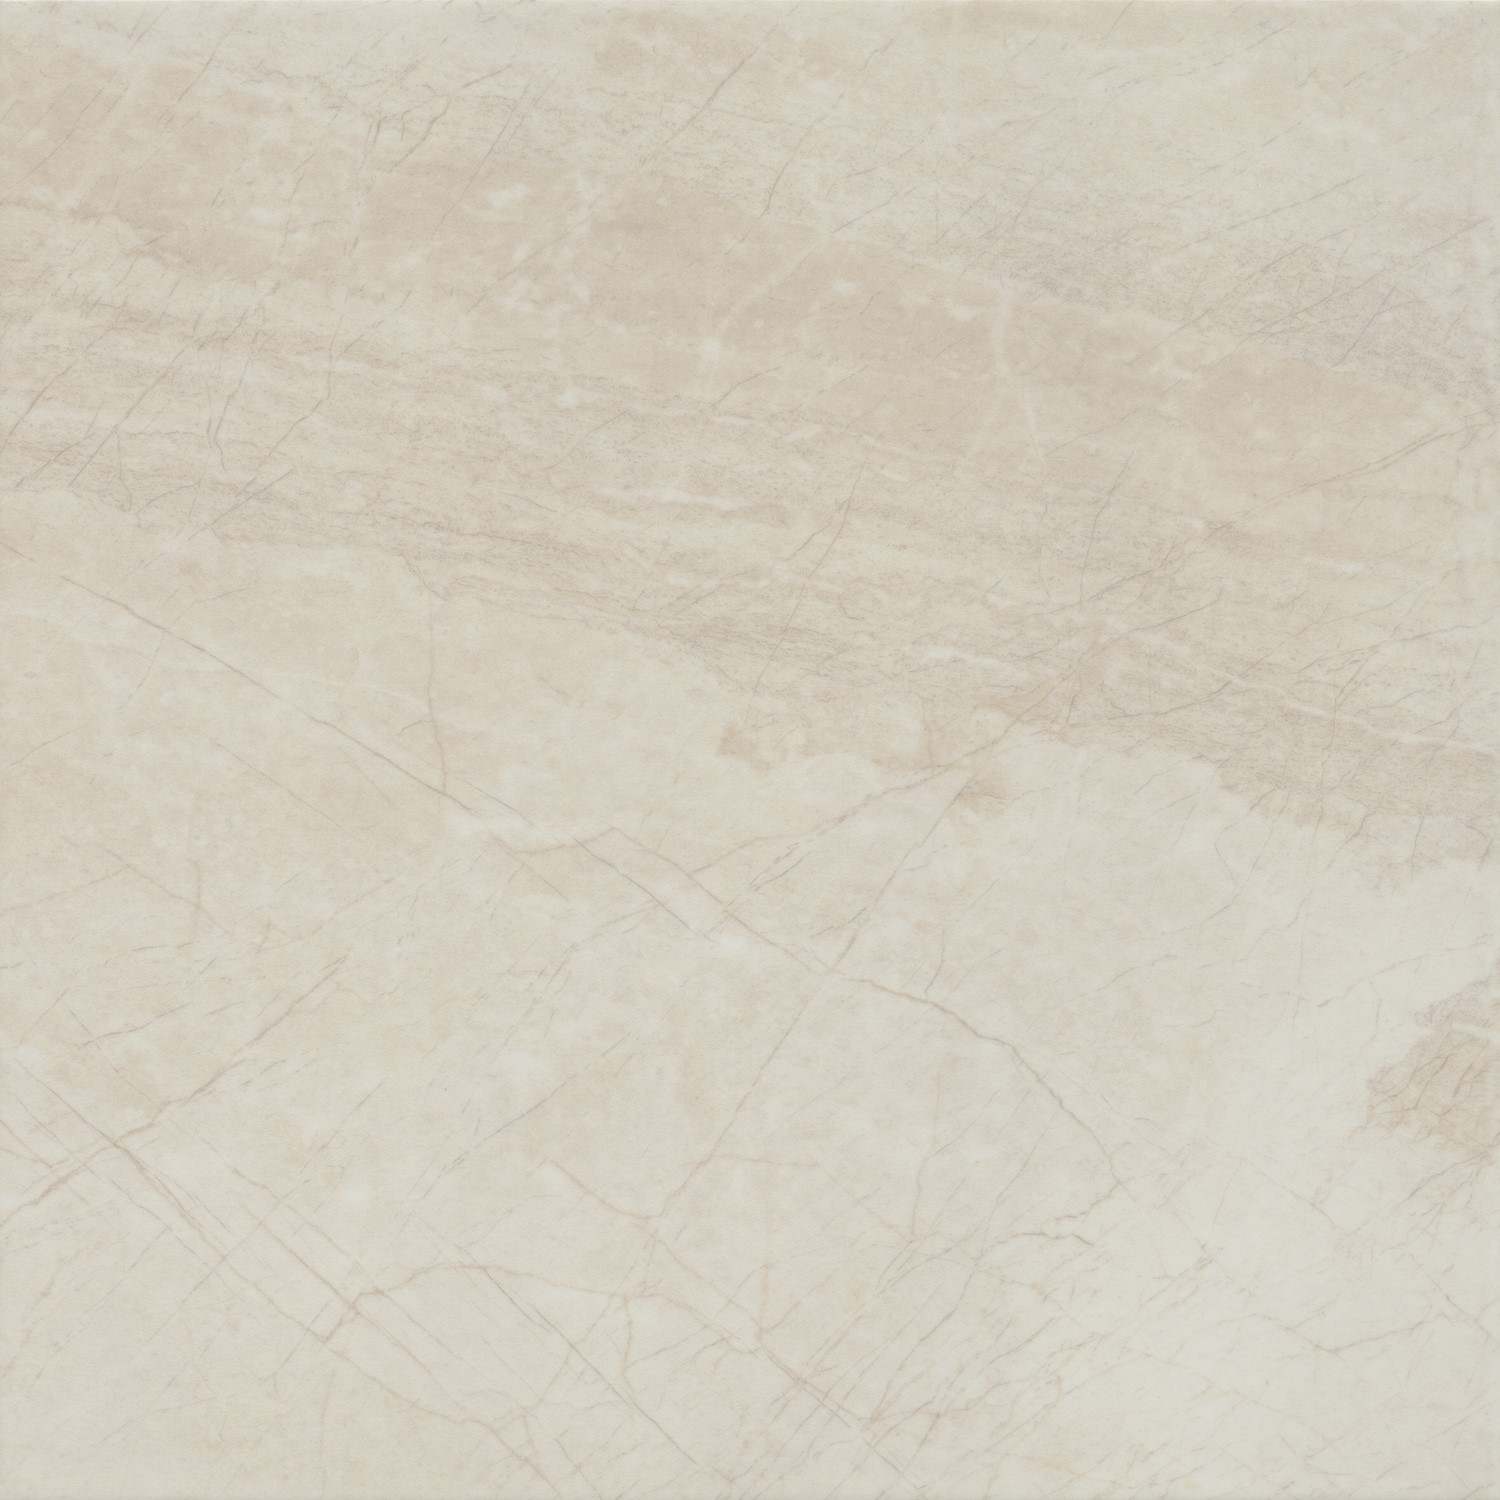 Light Beige Marble Effect Floor Tile 33 x 33cm - Nata